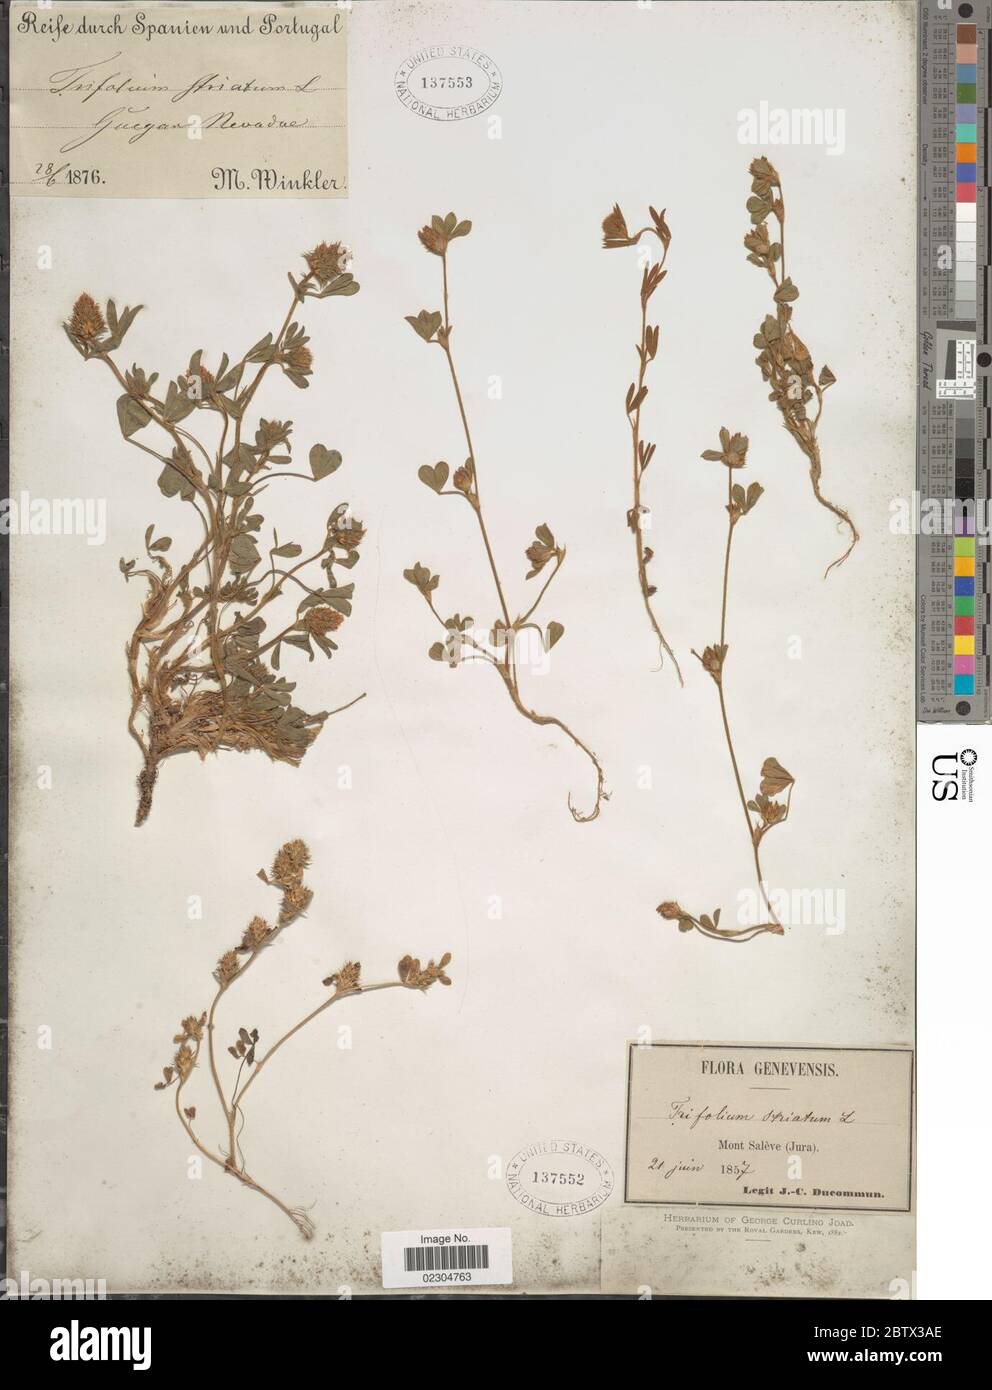 Trifolium striatum L. Stock Photo